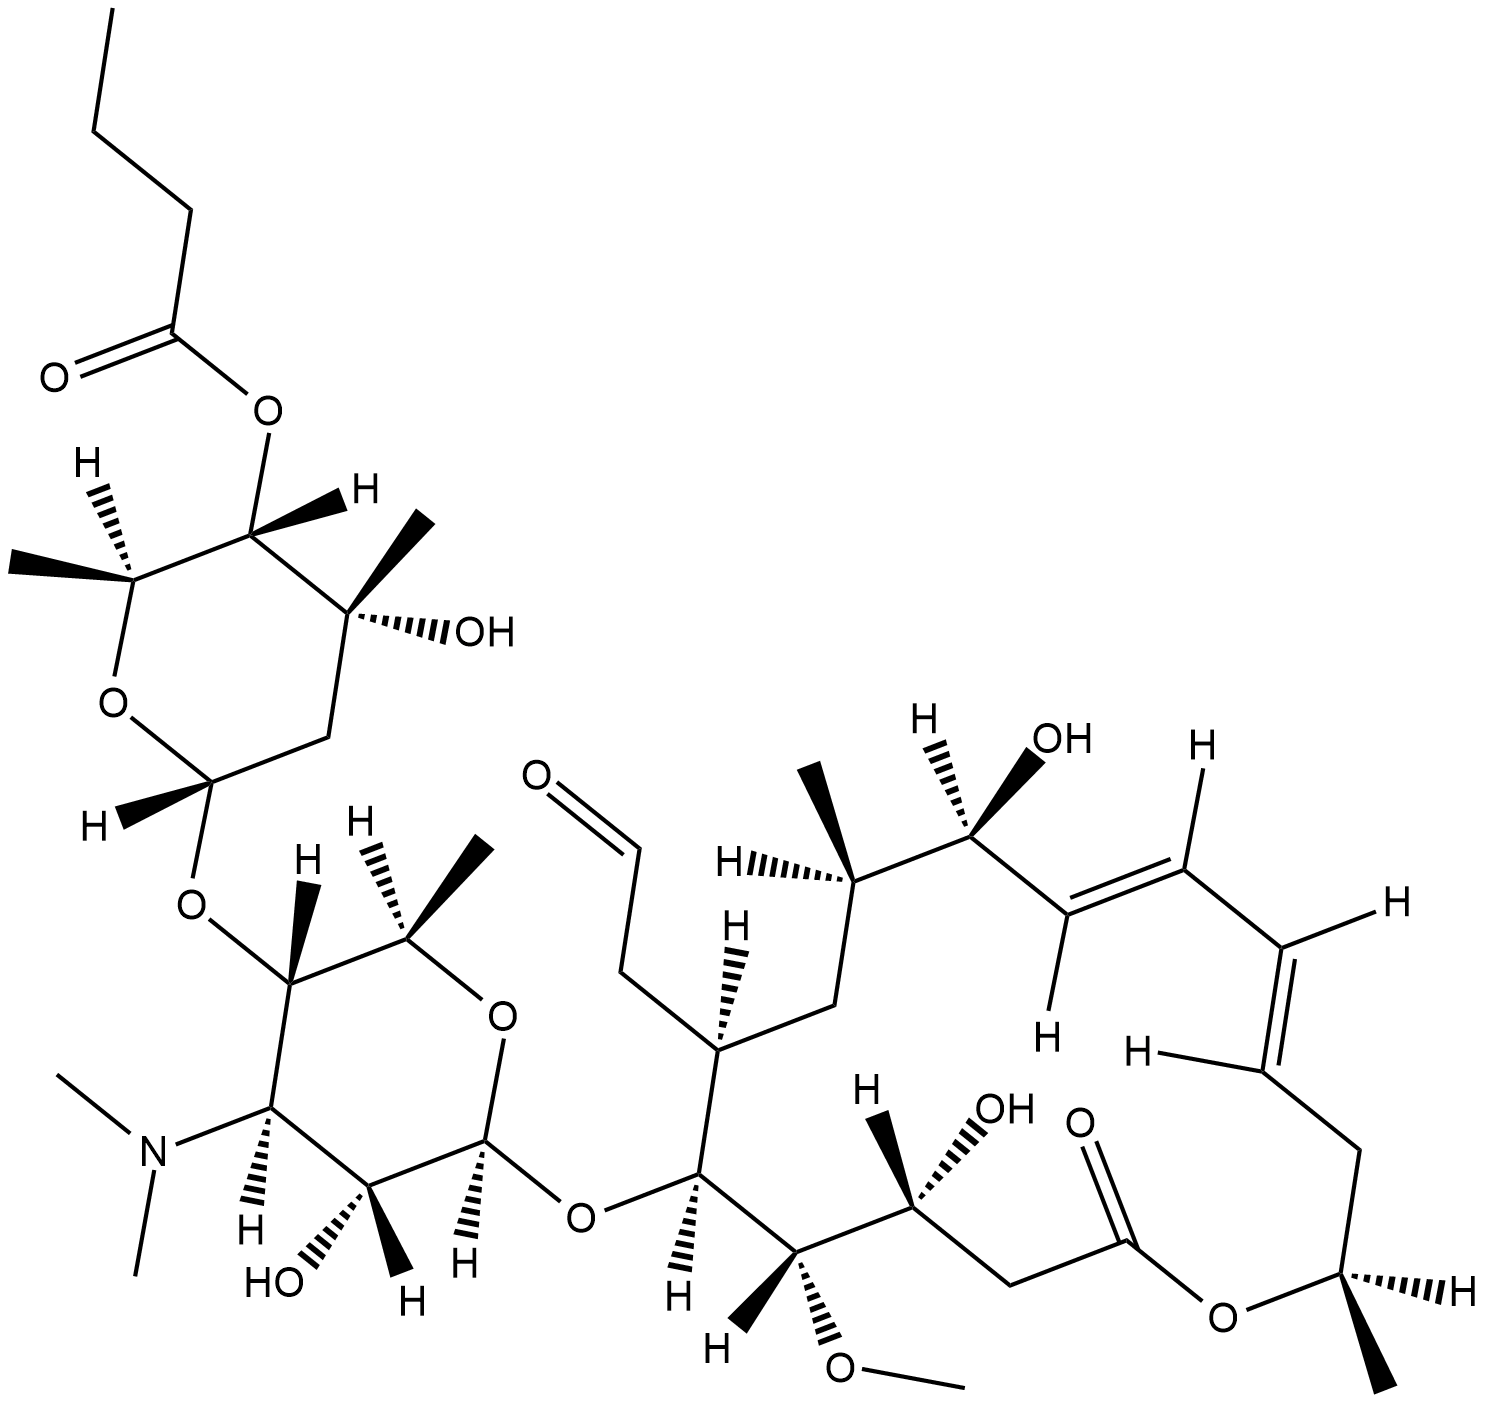 Leucomycin A5  Chemical Structure